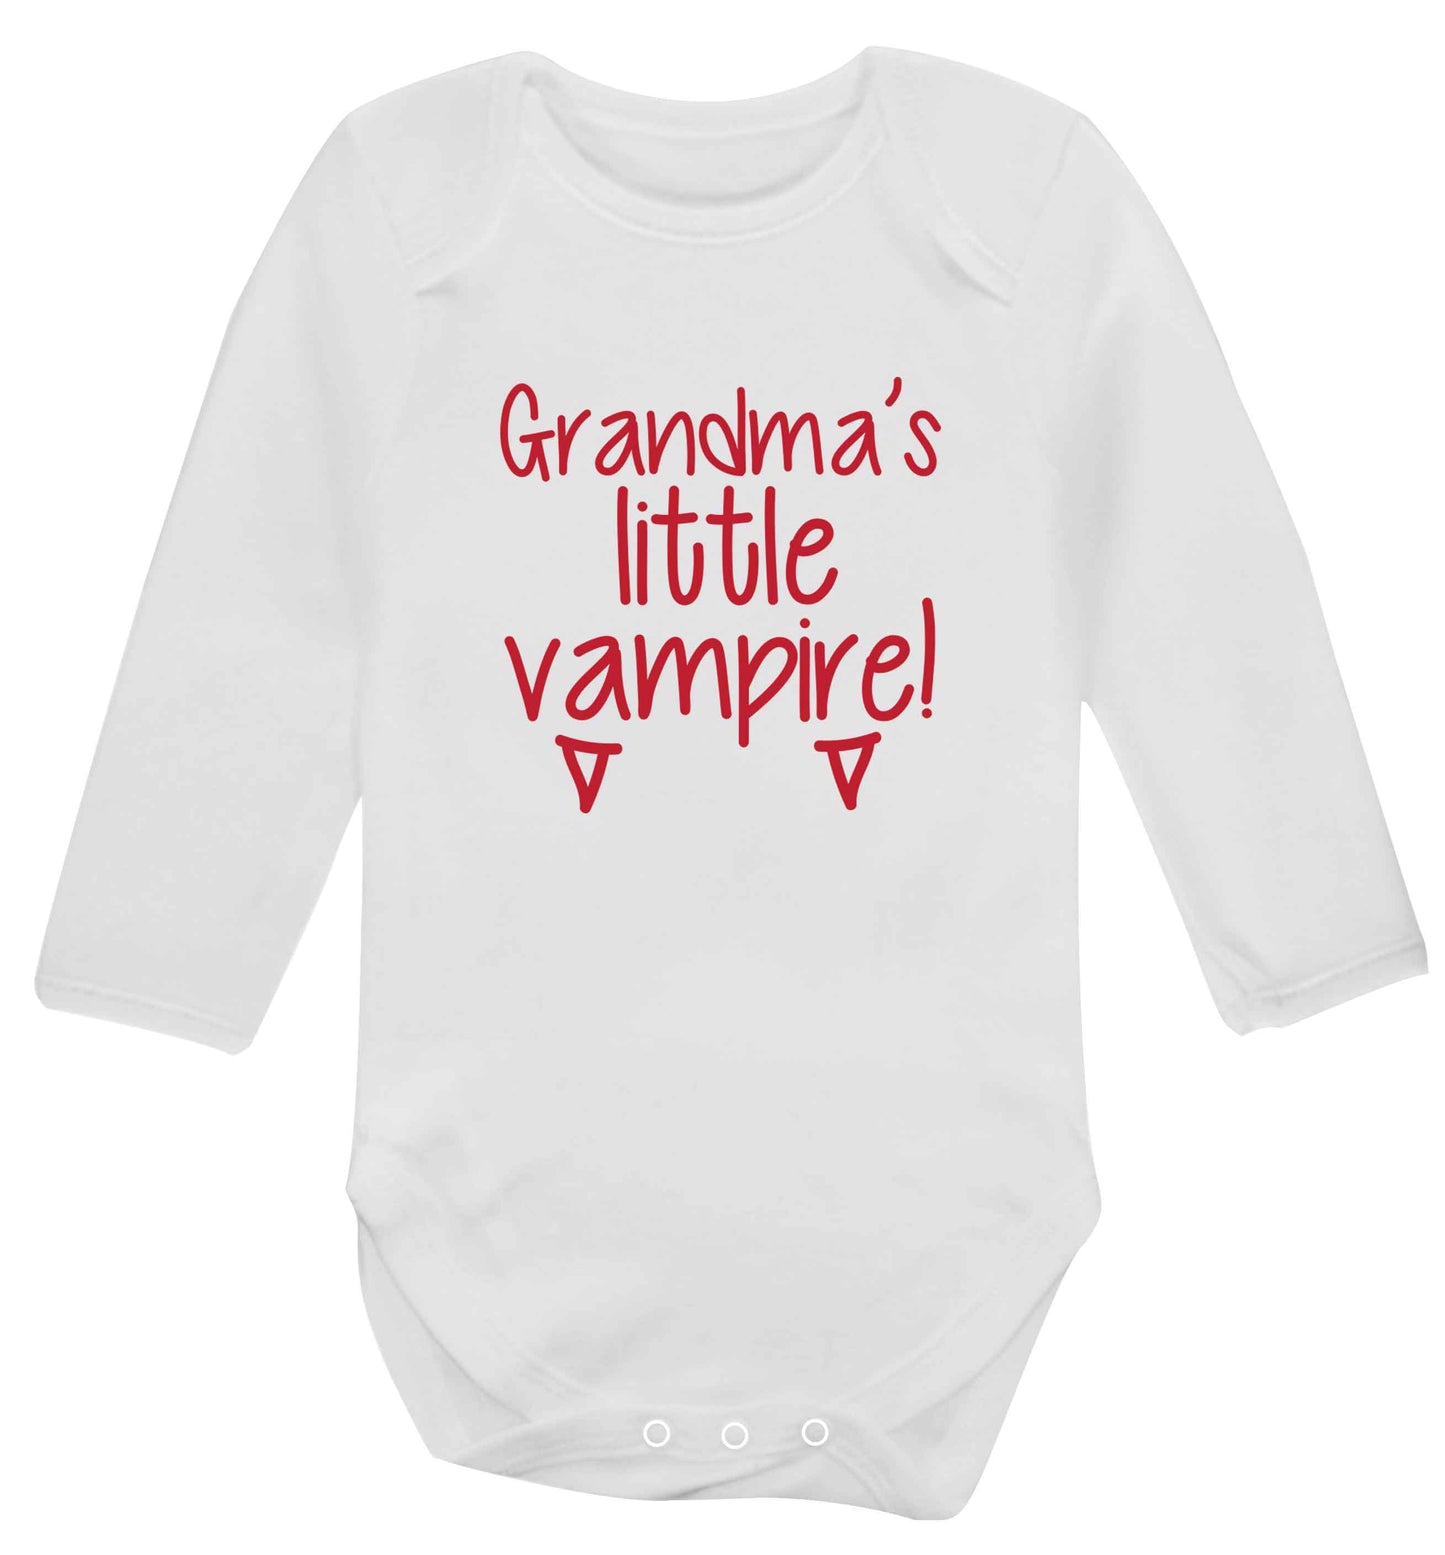 Grandma's little vampire baby vest long sleeved white 6-12 months